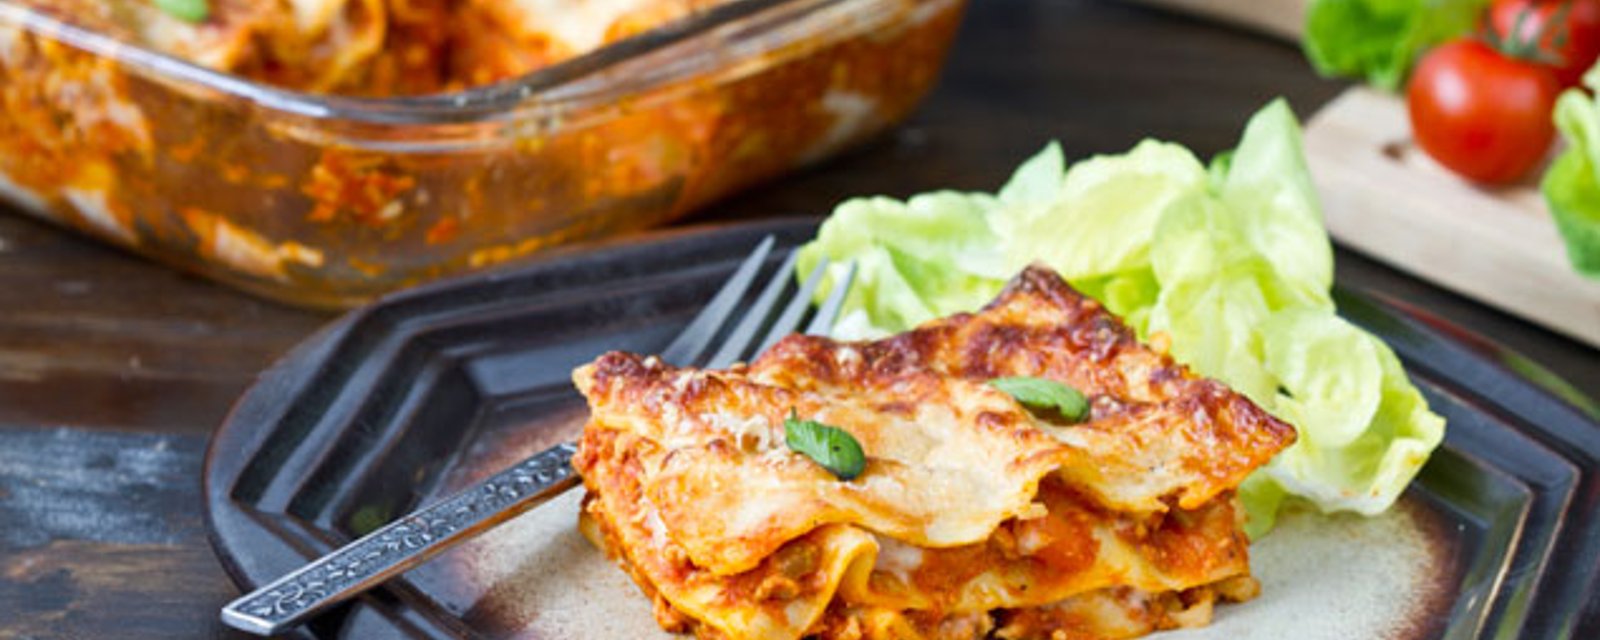 Pour souper, faites différent et cuisinez cette lasagne au poulet